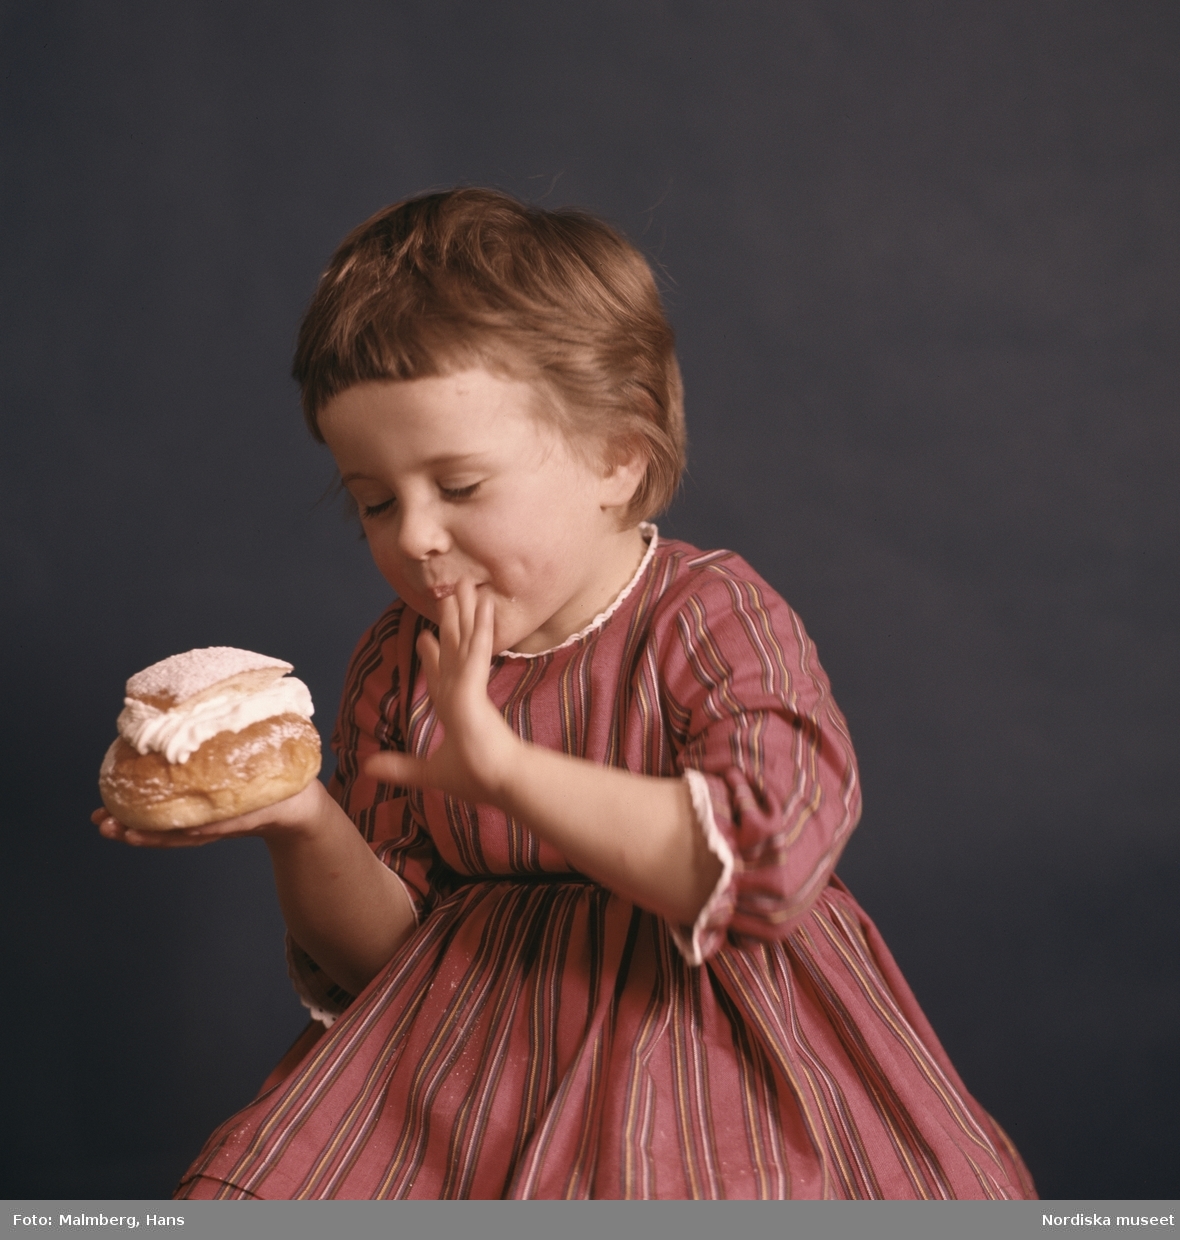 Studioporträtt: "Barn äter semla: reklam." Fettisdagsbulle.